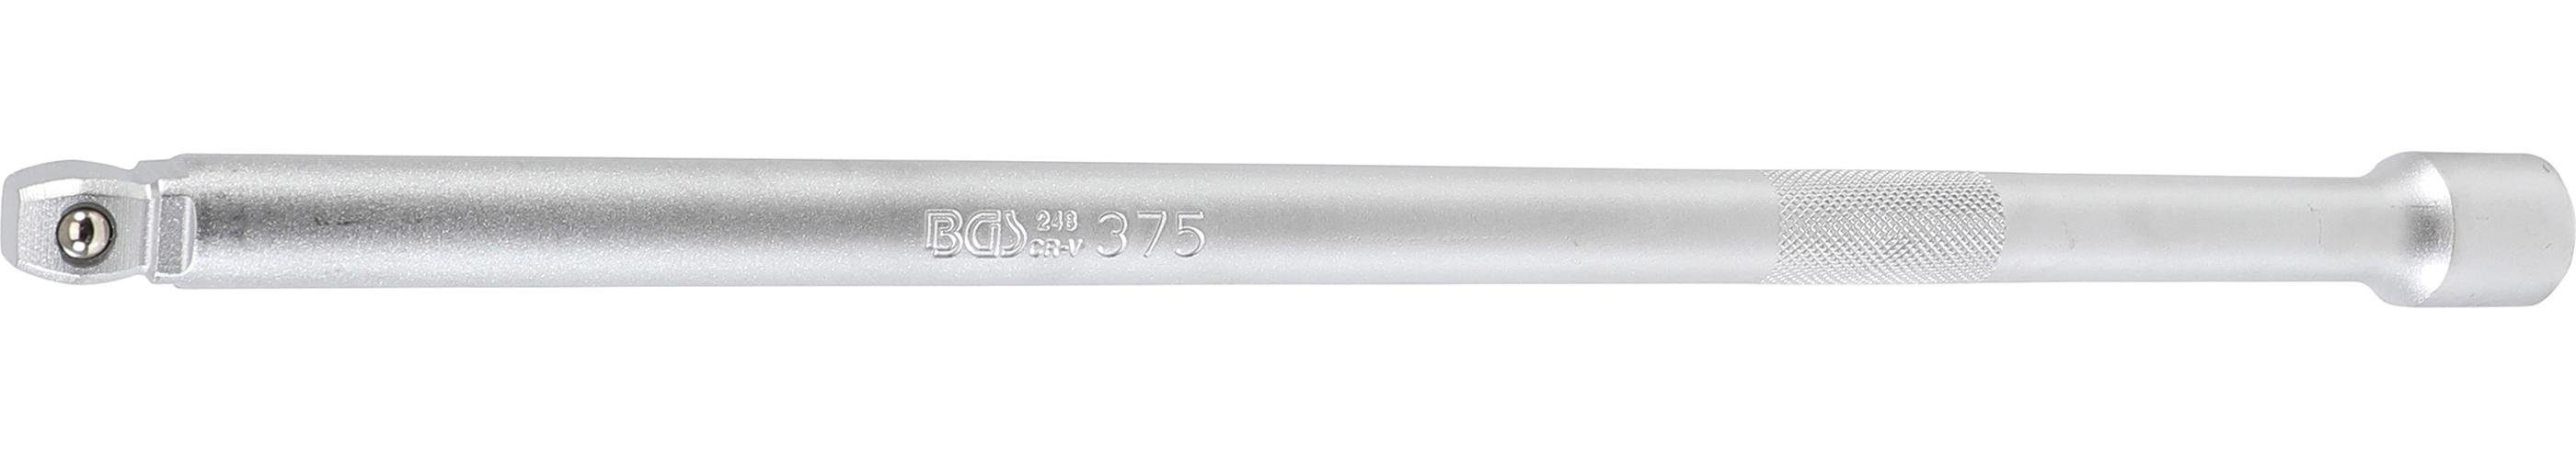 BGS technic Ratschenringschlüssel Kipp-Verlängerung, 12,5 mm (1/2), 375 mm